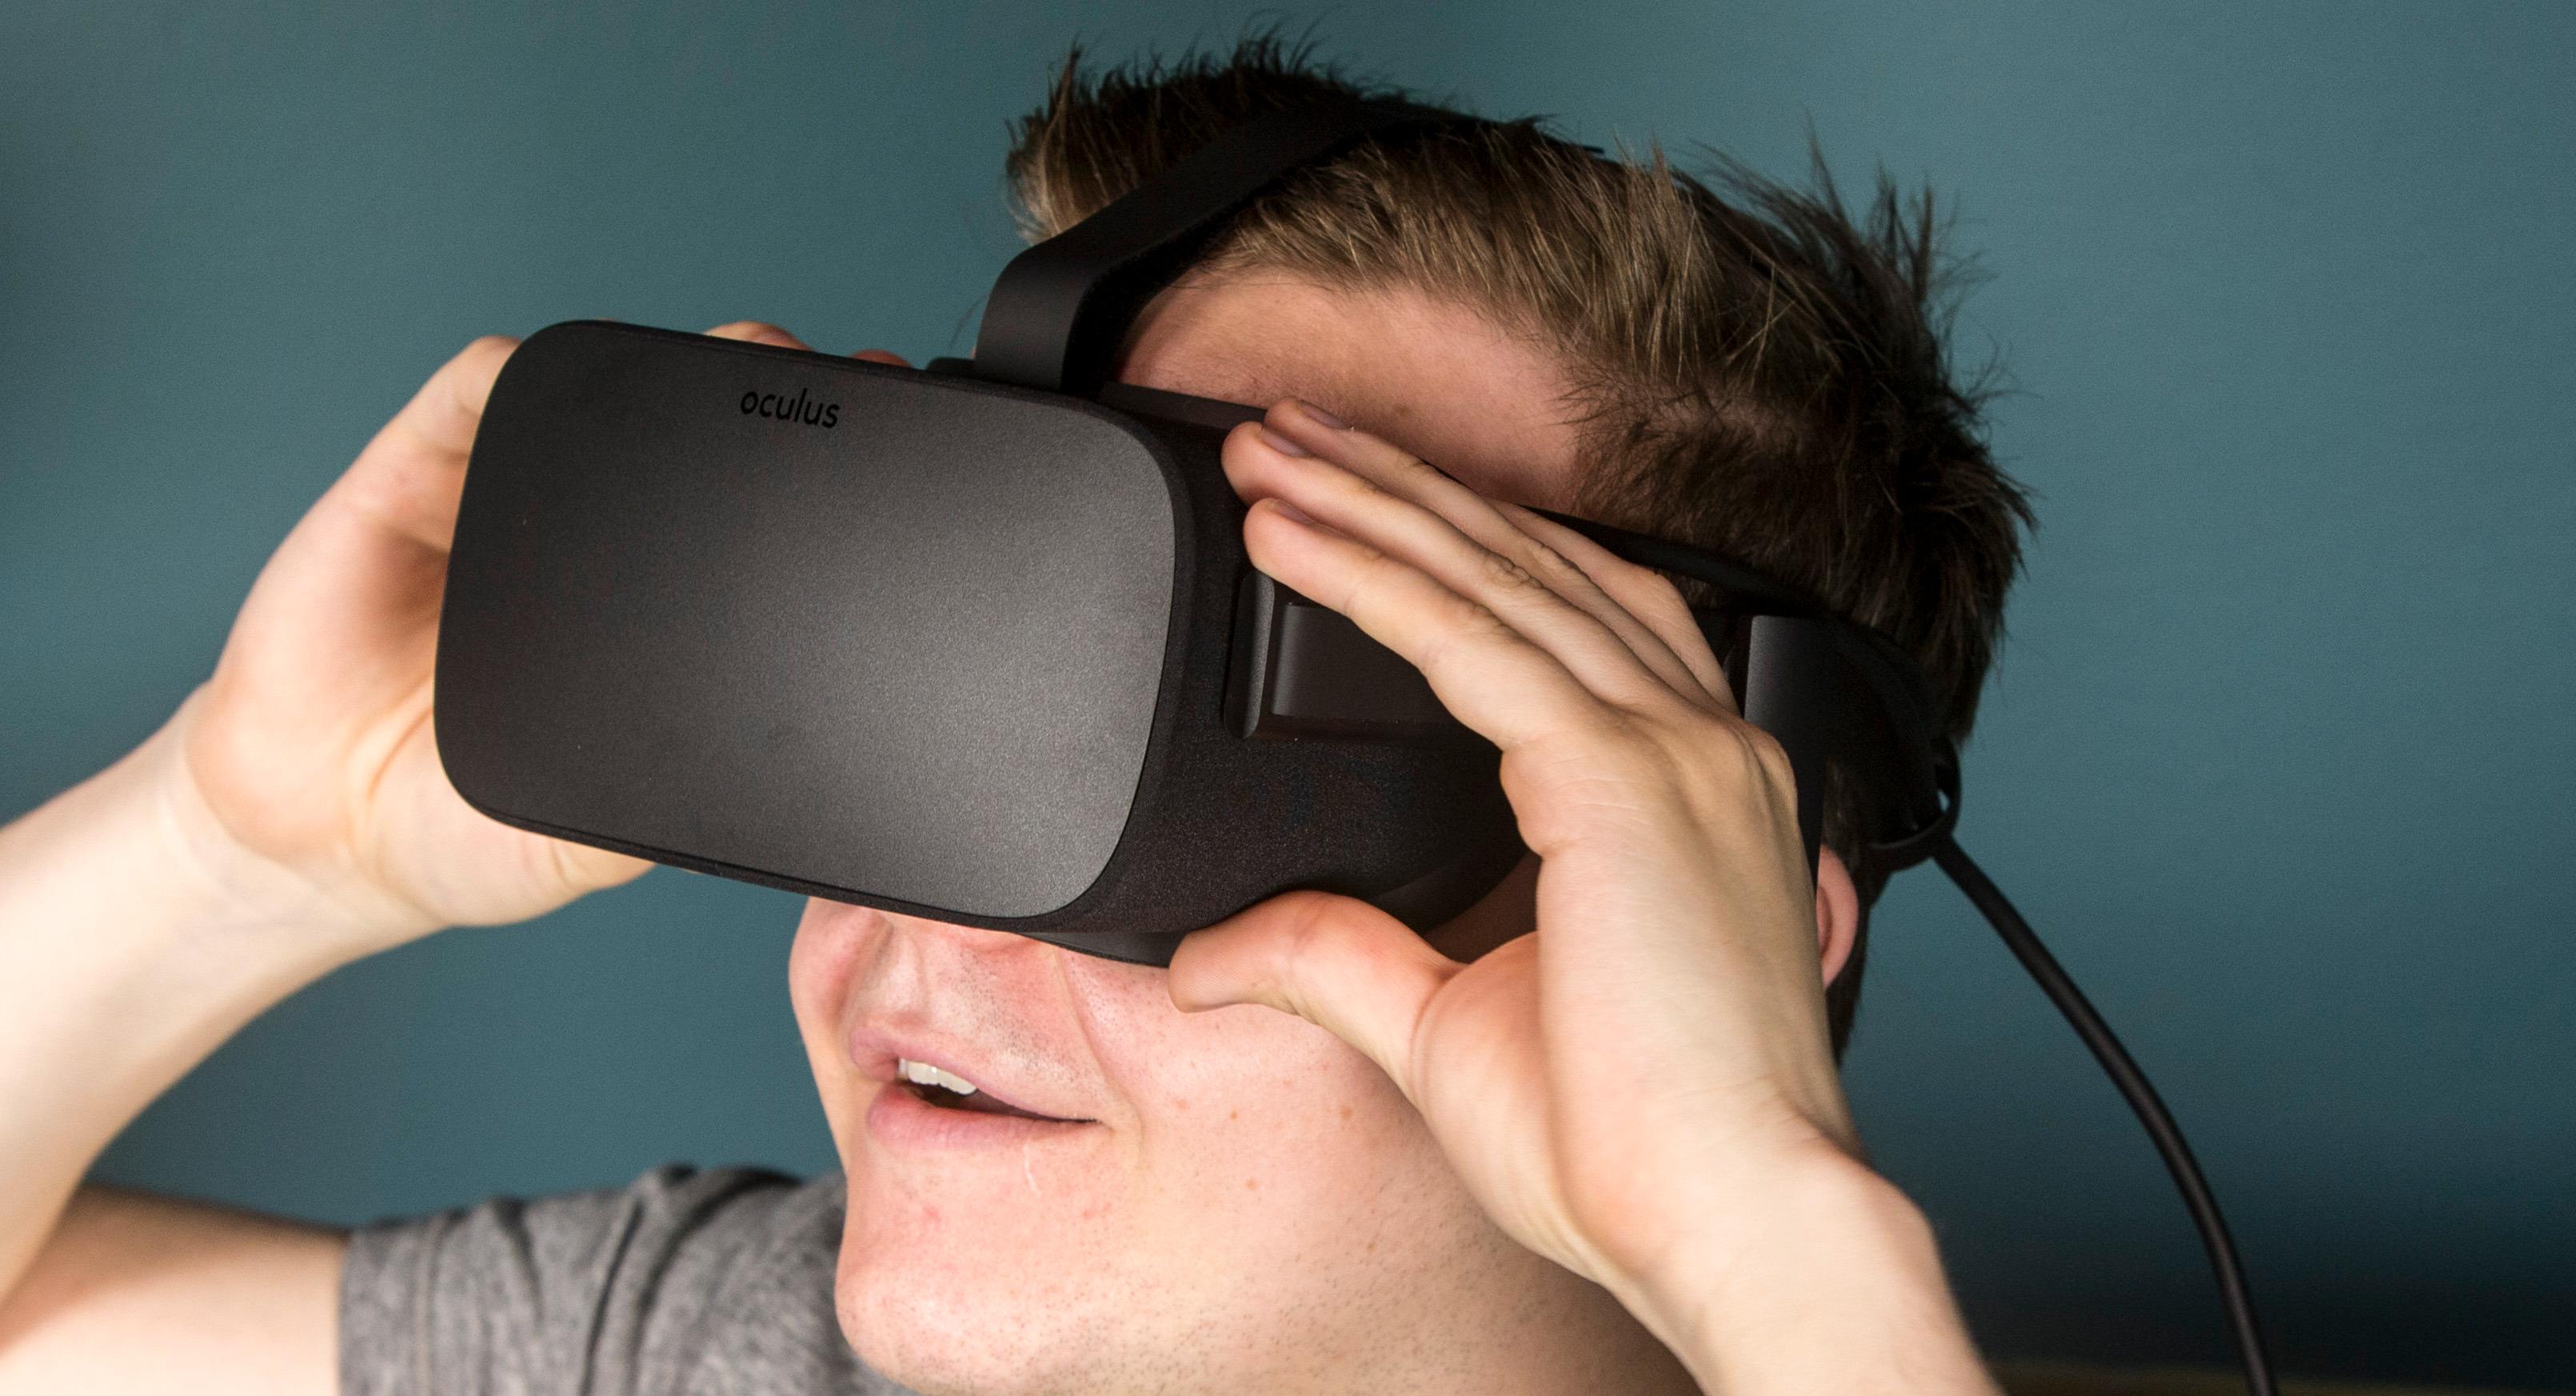 Fremtidige versjoner av Oculus Rift kan ha mye å hente på utviklingen som skjer innen LCD-teknologien.